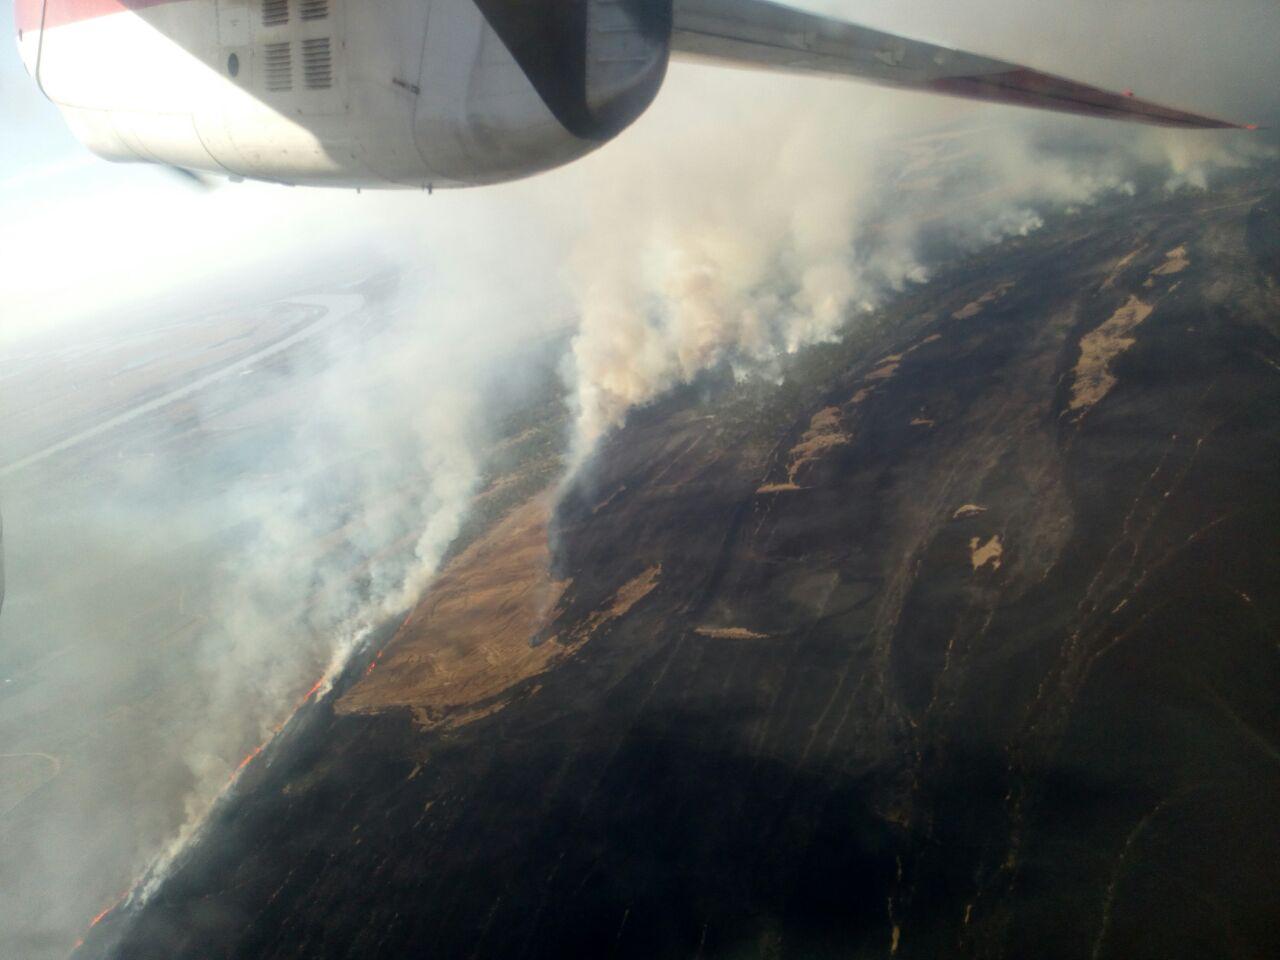 На Одещині горить 50 га трави та очерету, гасити пожежу допомагає авіація (фото)